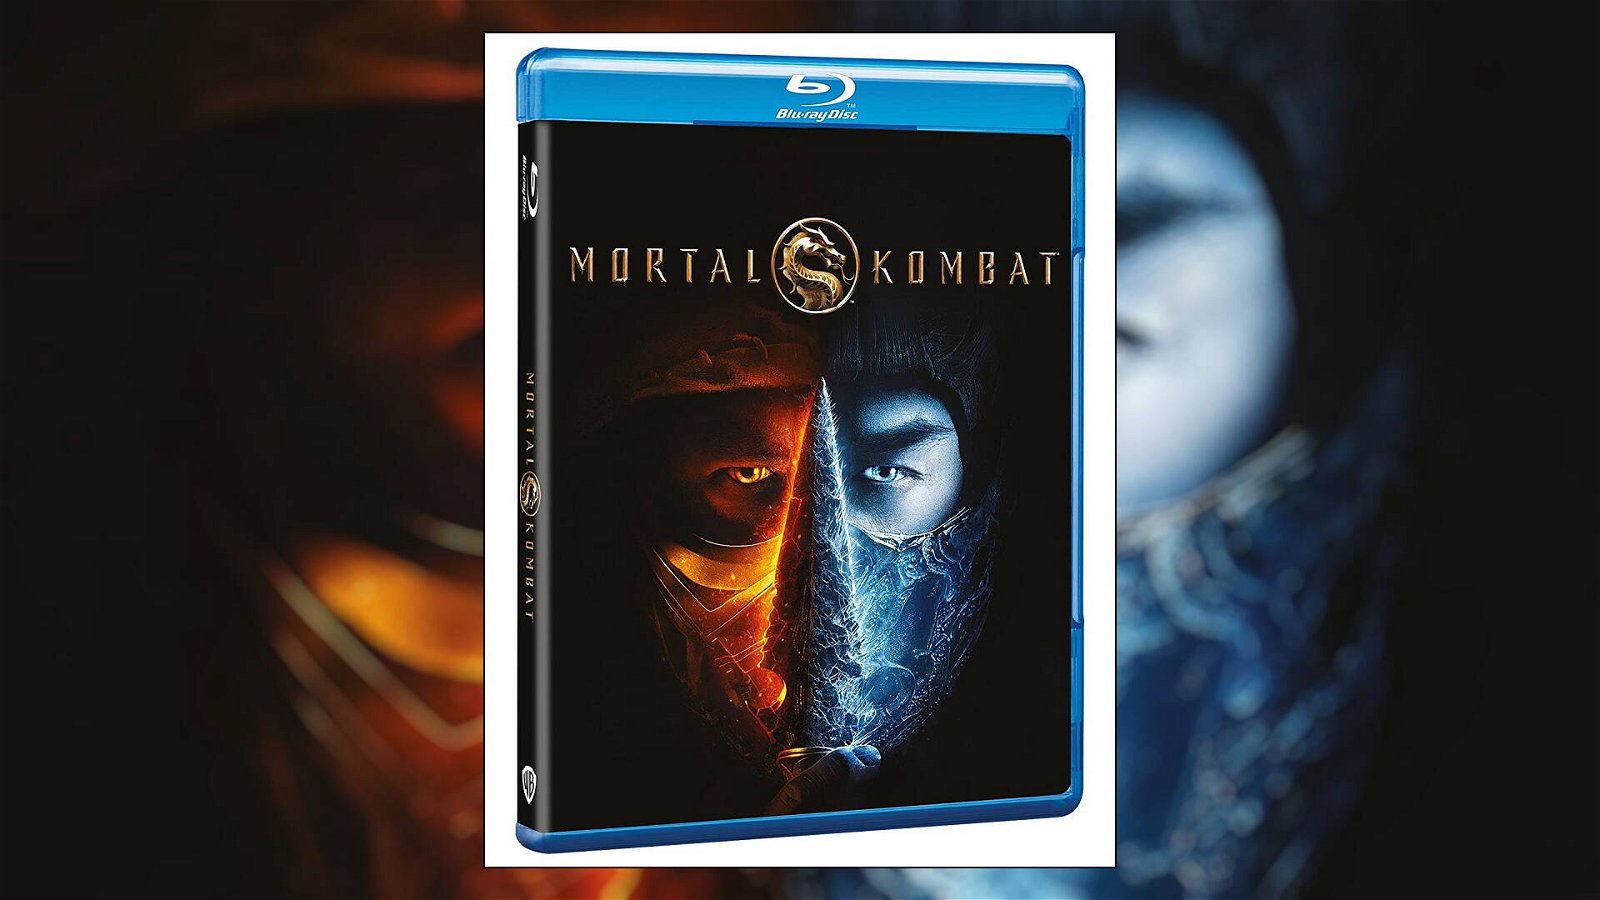 Immagine di Mortal Kombat in Home Video, la recensione